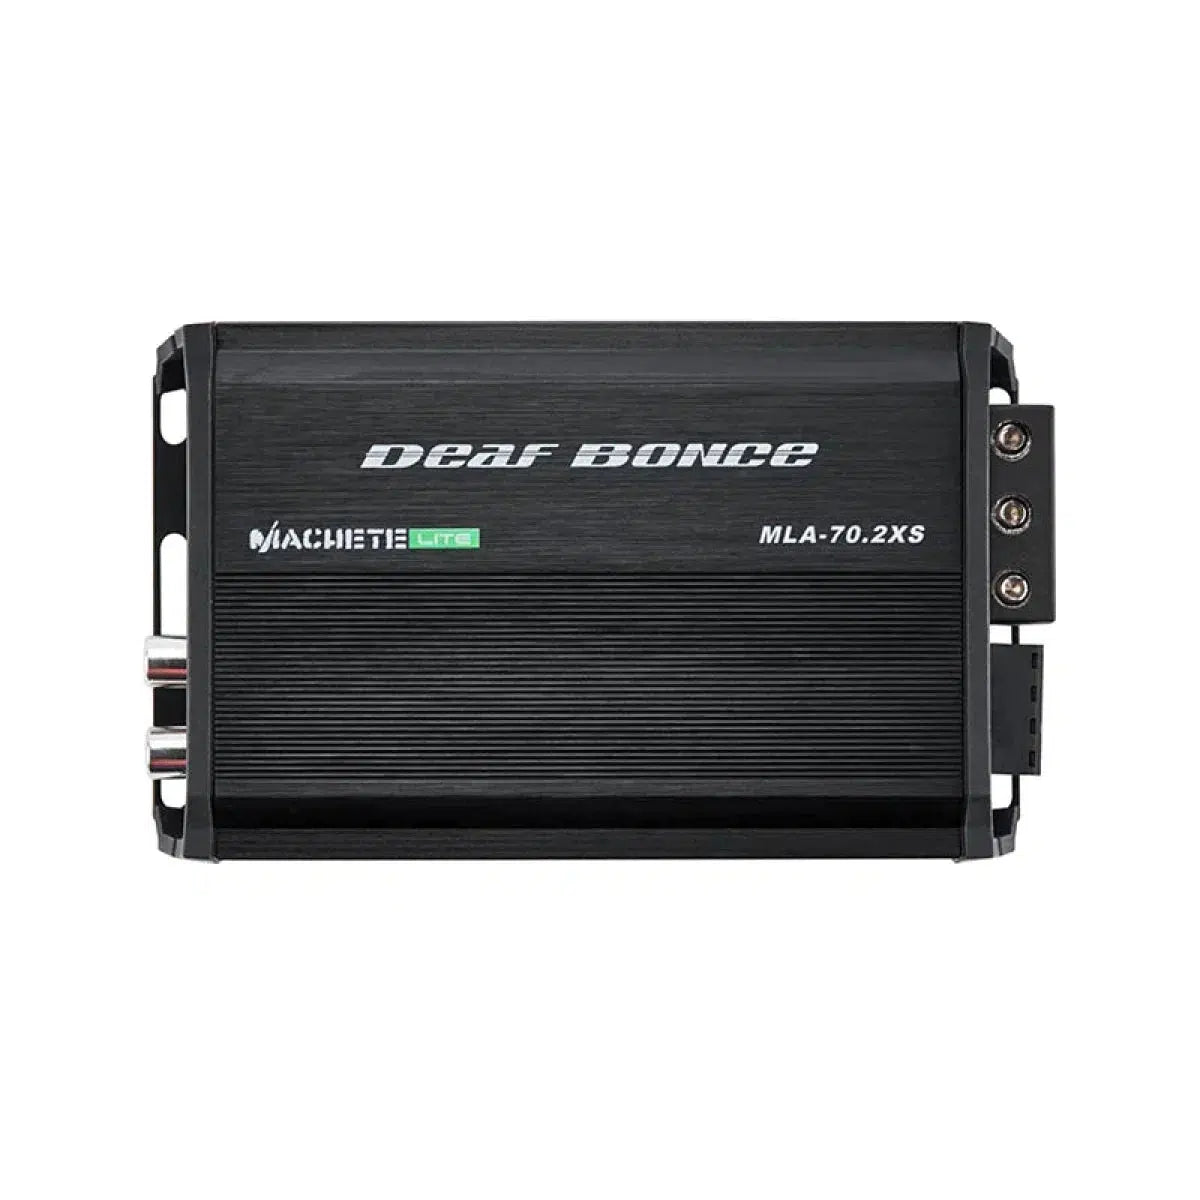 Deaf Bonce-Machete Light MLA-70.2XS 2-canaux Amplificateur-Masori.fr